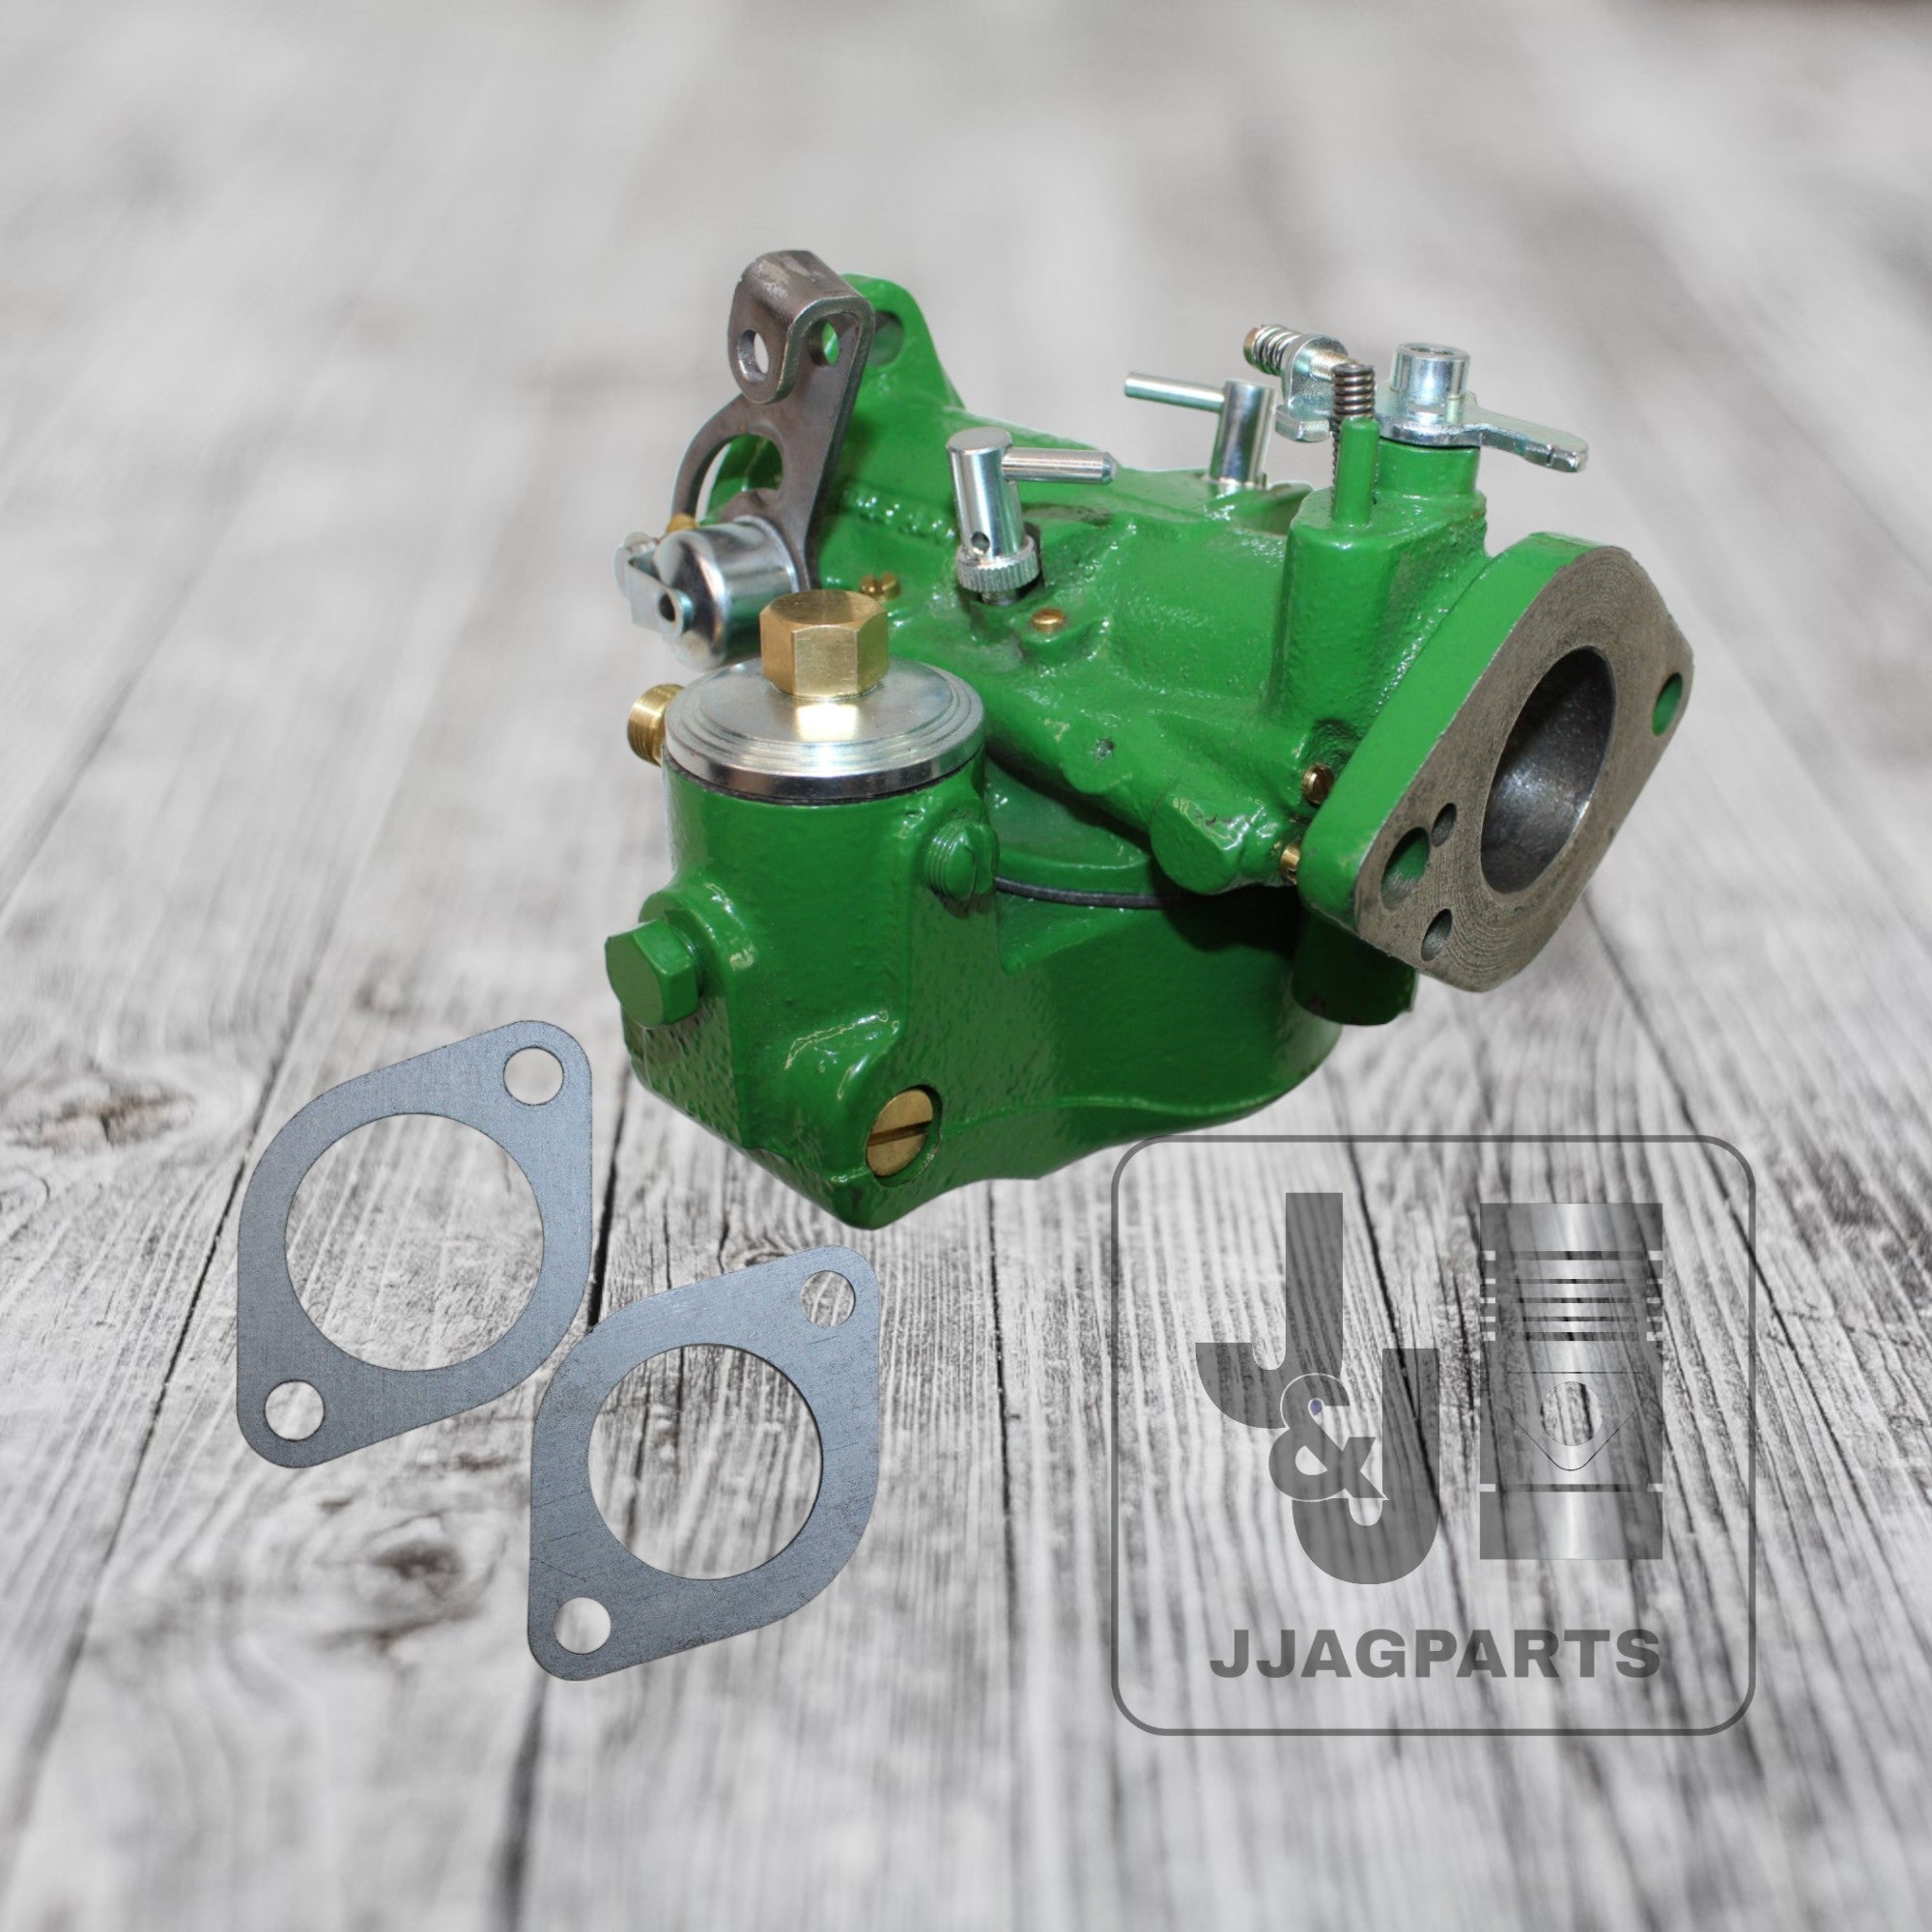 DLTX 67 John Deere Marvel Schebler Remanufactured Carburetor B Tractors (Core)